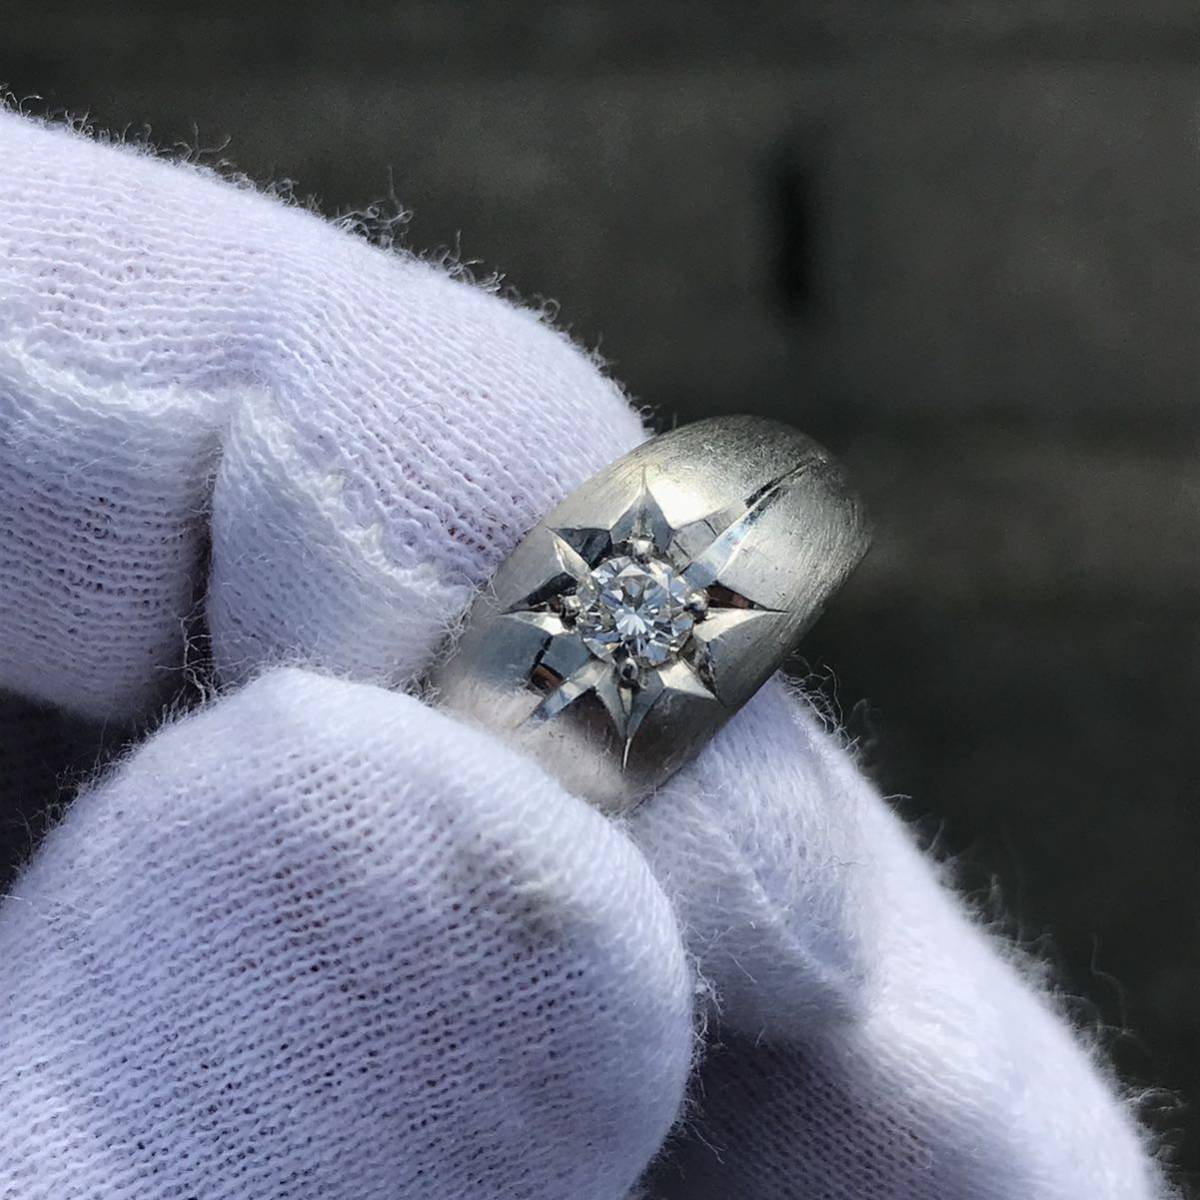 【貴金属】本物 Pt900 指輪 ダイヤモンド 0.23ct リング 重さ11.2g サイズ18号 プラチナ メンズ レディース アクセサリー